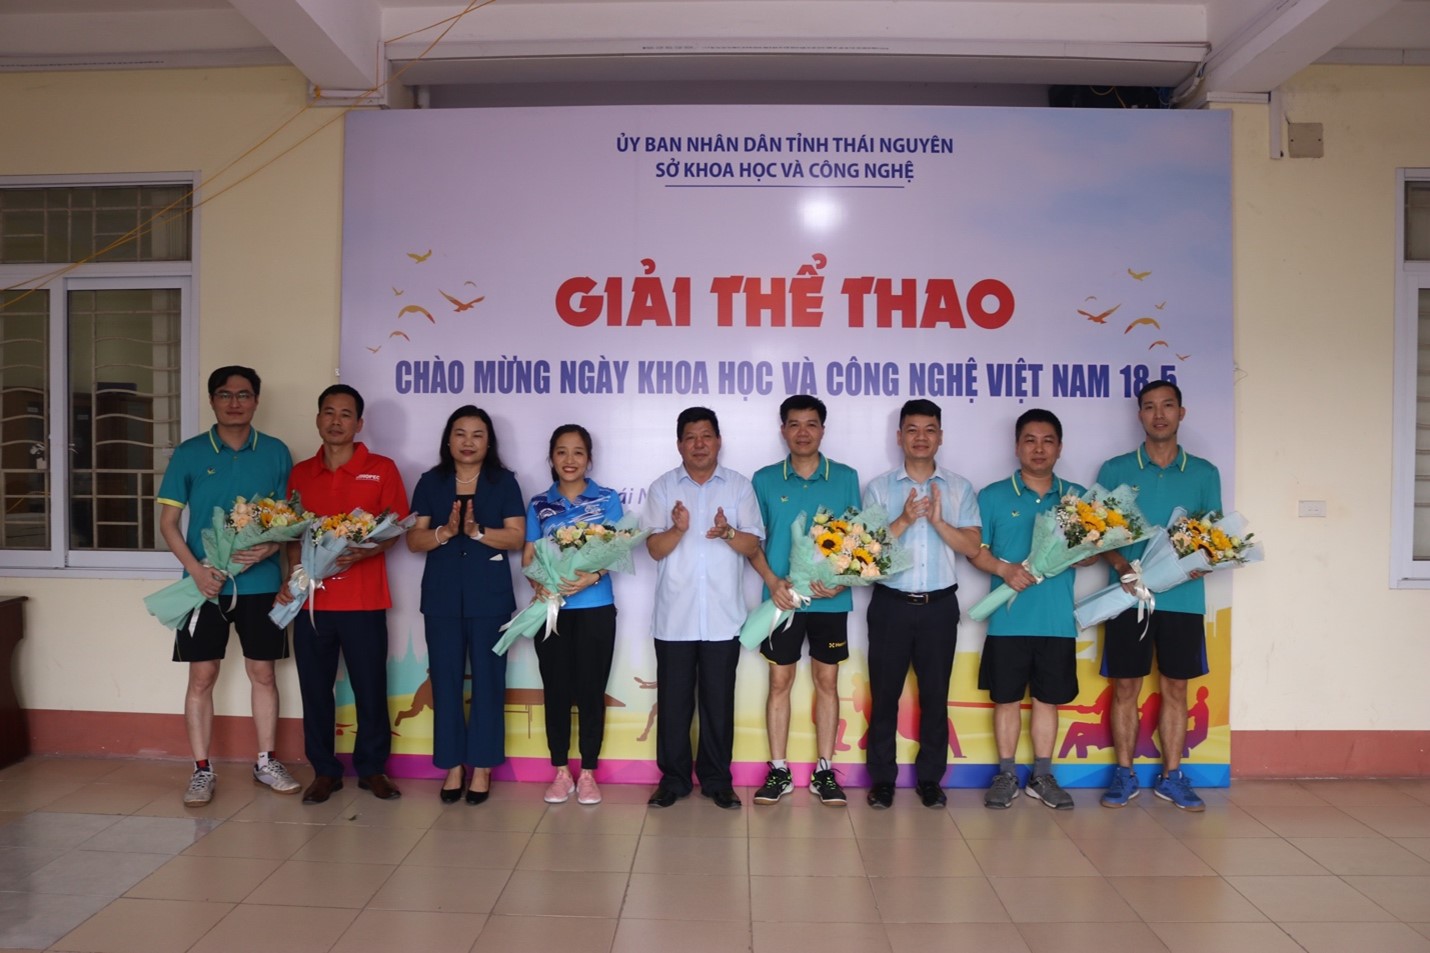 Giải thể thao chào mừng Ngày Khoa học và Công nghệ Việt Nam 18-5